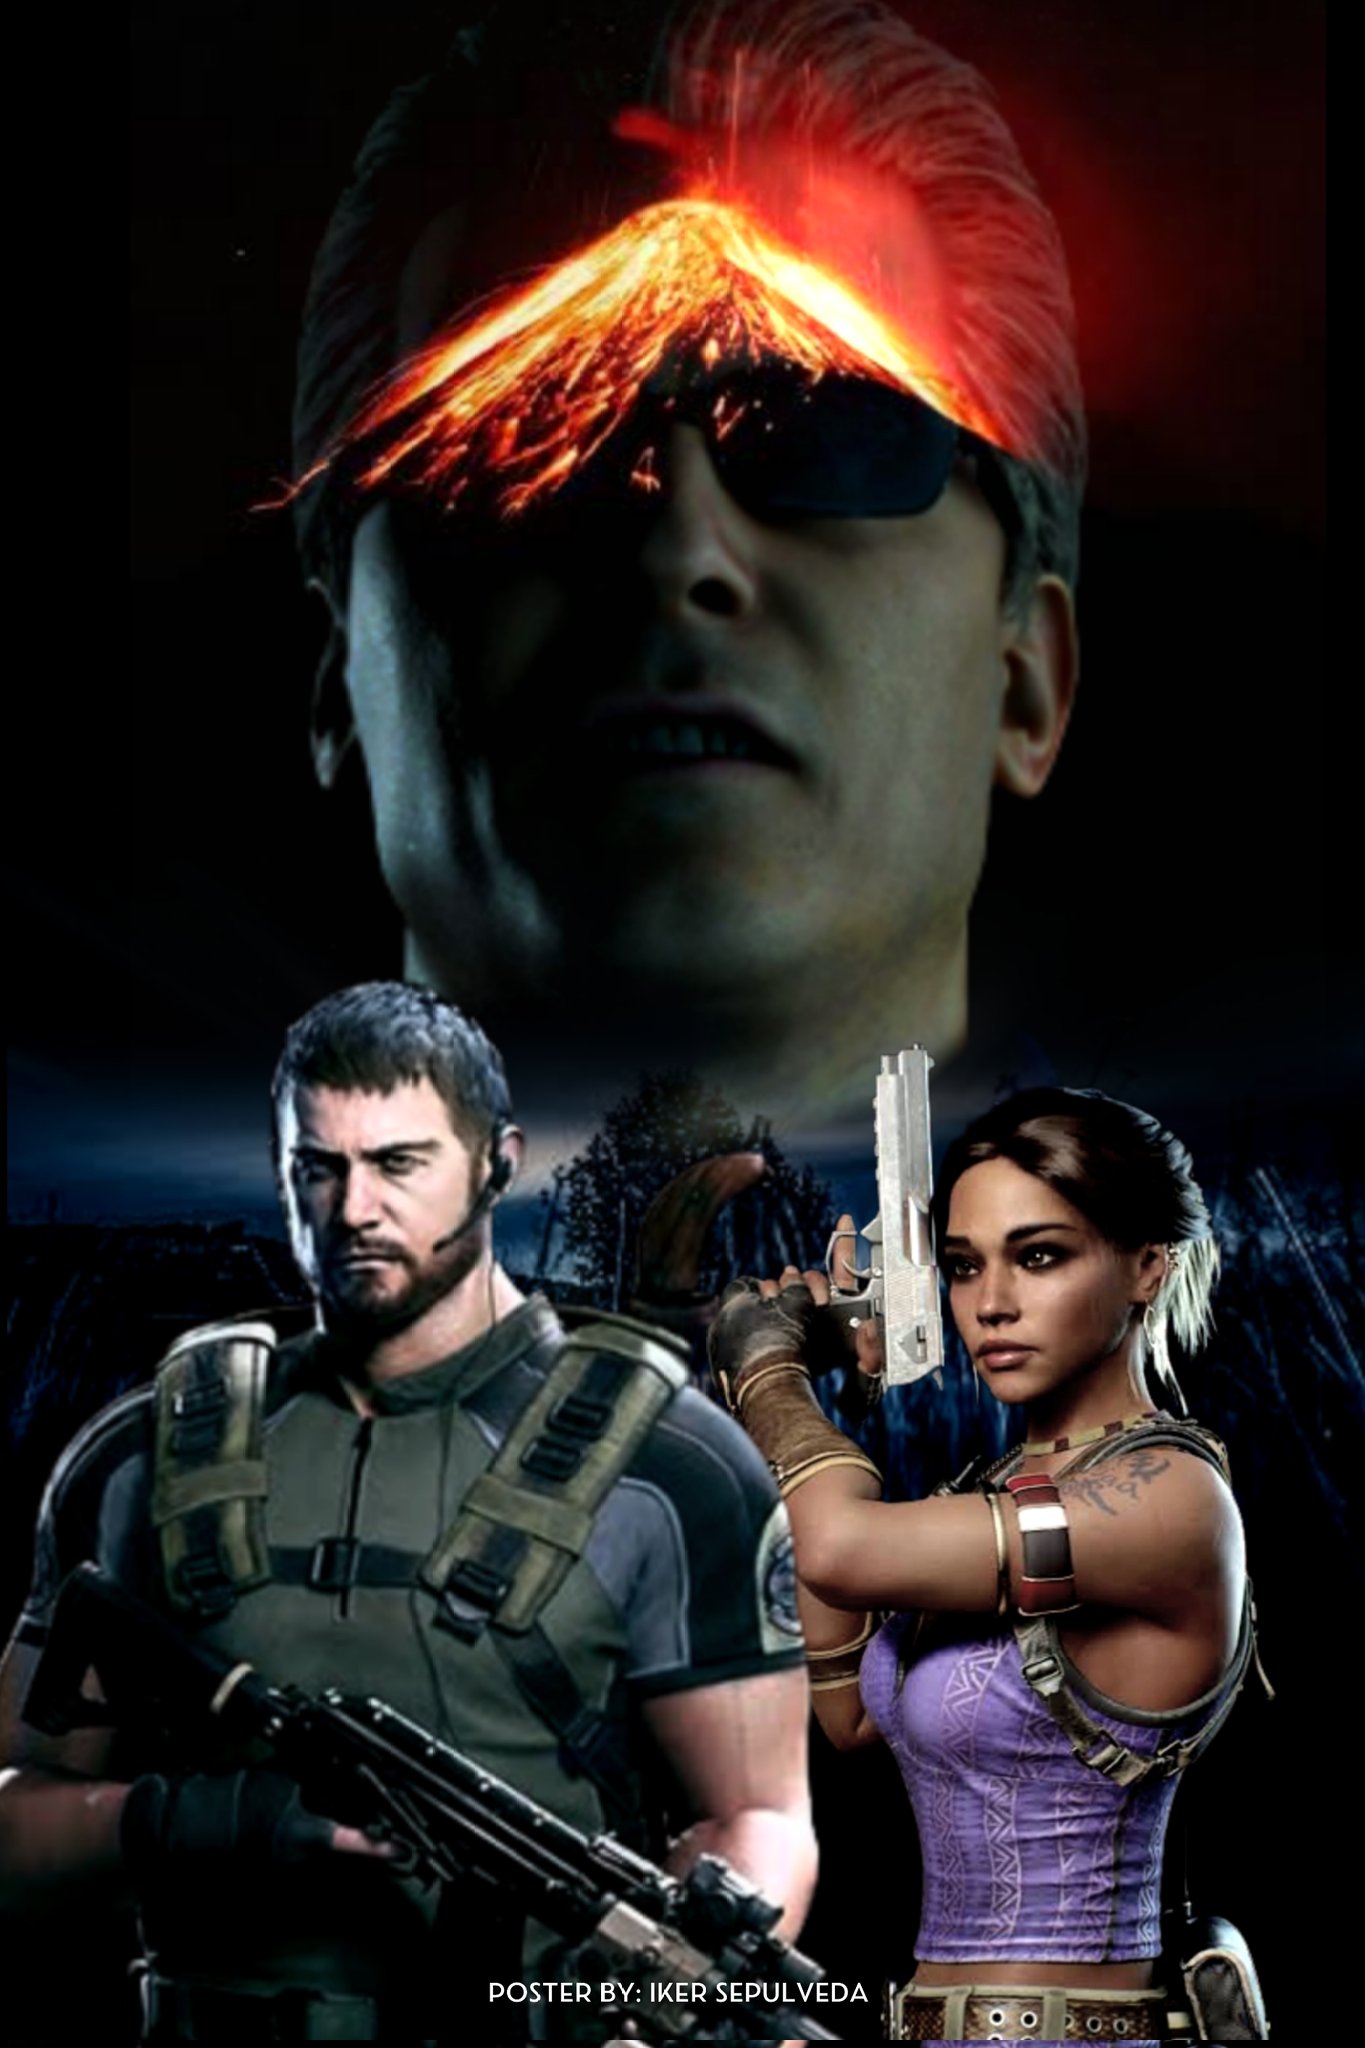 Radiant-Chris on X: RT @Yandere_Senpai_: Billions. Resident Evil 5 Remake  fan poster. #residentevil #residentevil5 #residentevil5remake #remake # remakes #res… / X